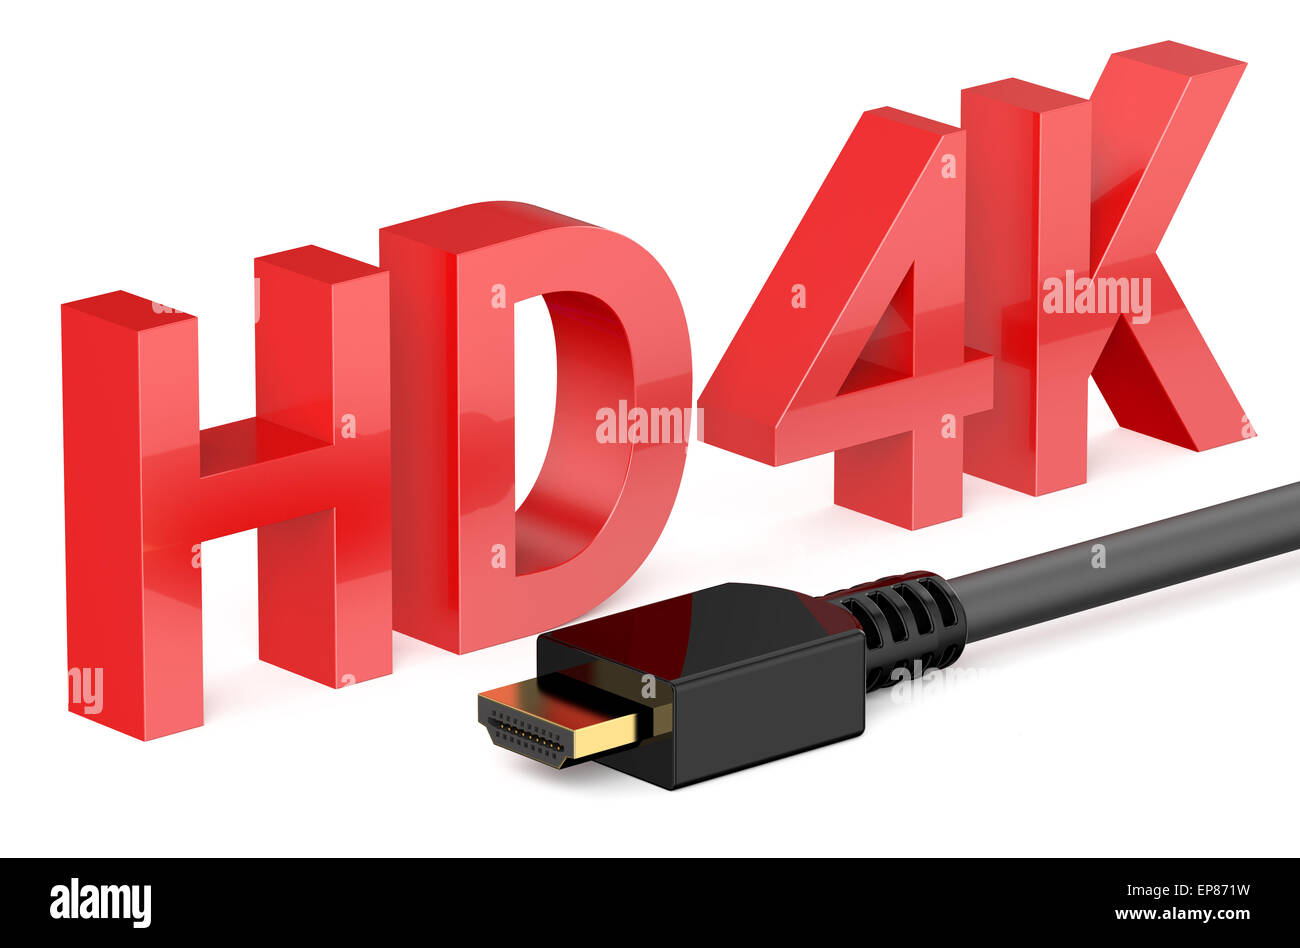 HD 4K concetto isolato su sfondo bianco Foto Stock